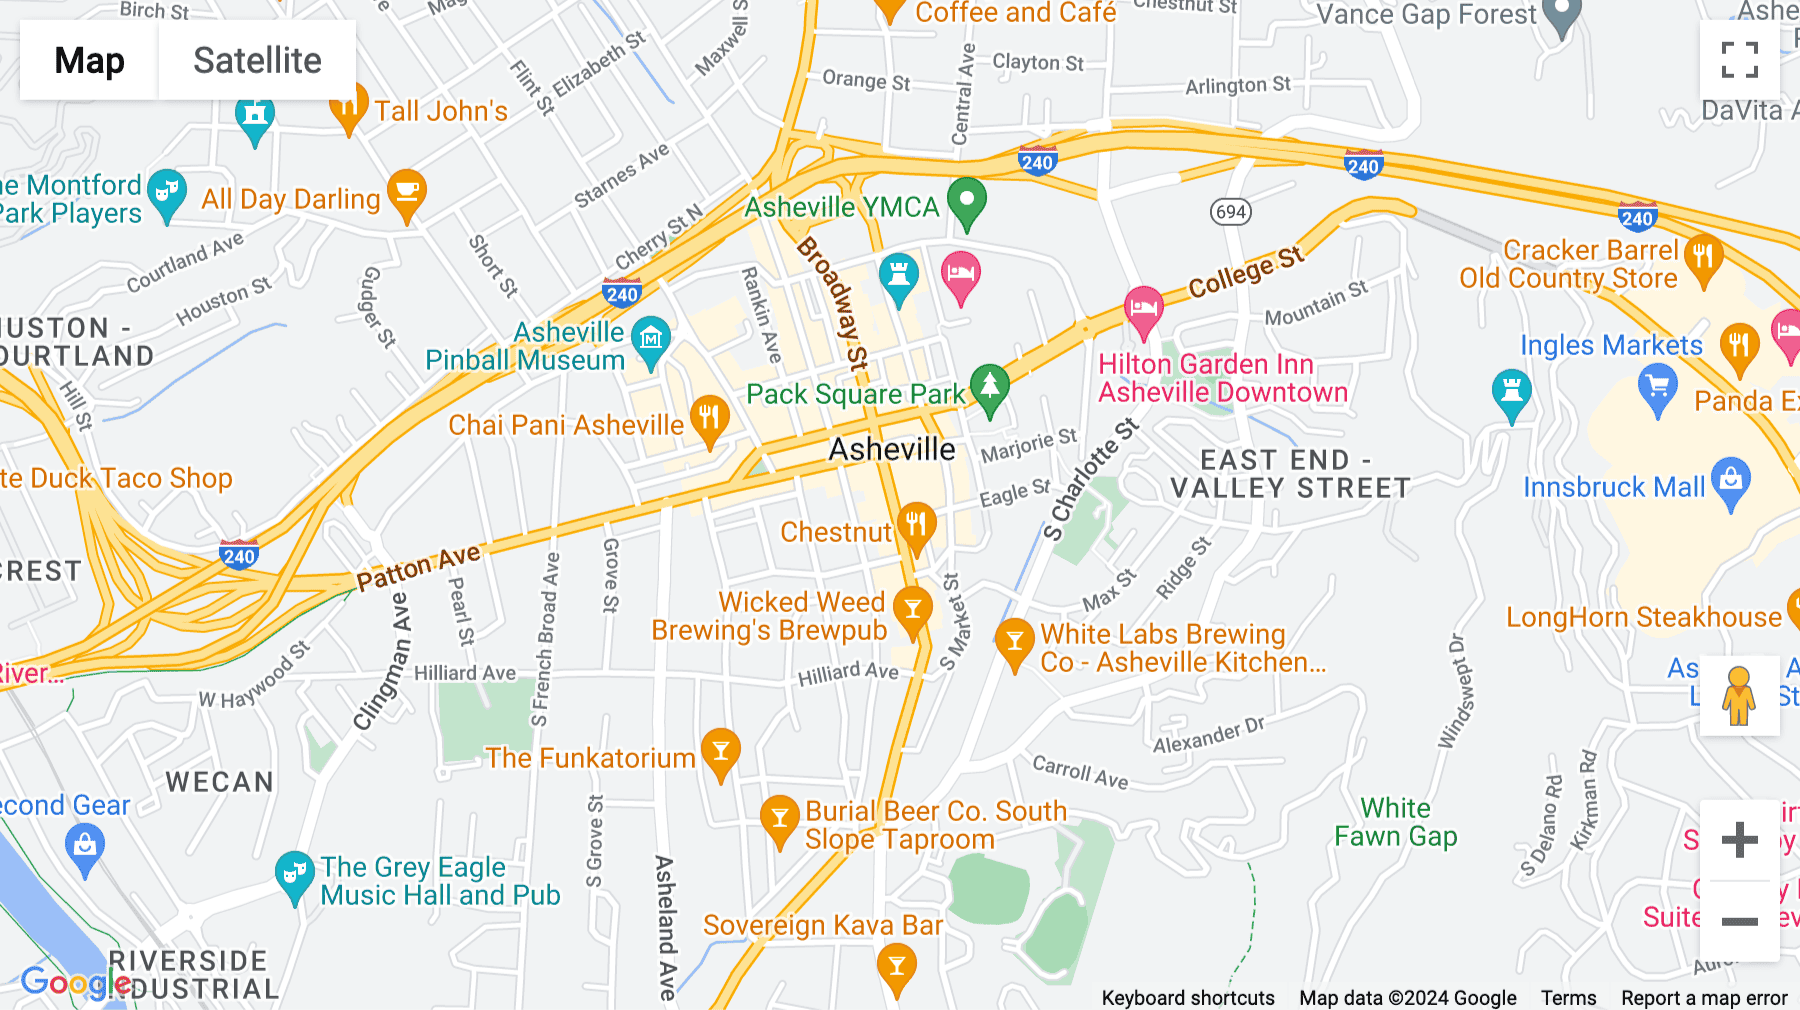 Click for interative map of 16 Biltmore Avenue, Asheville